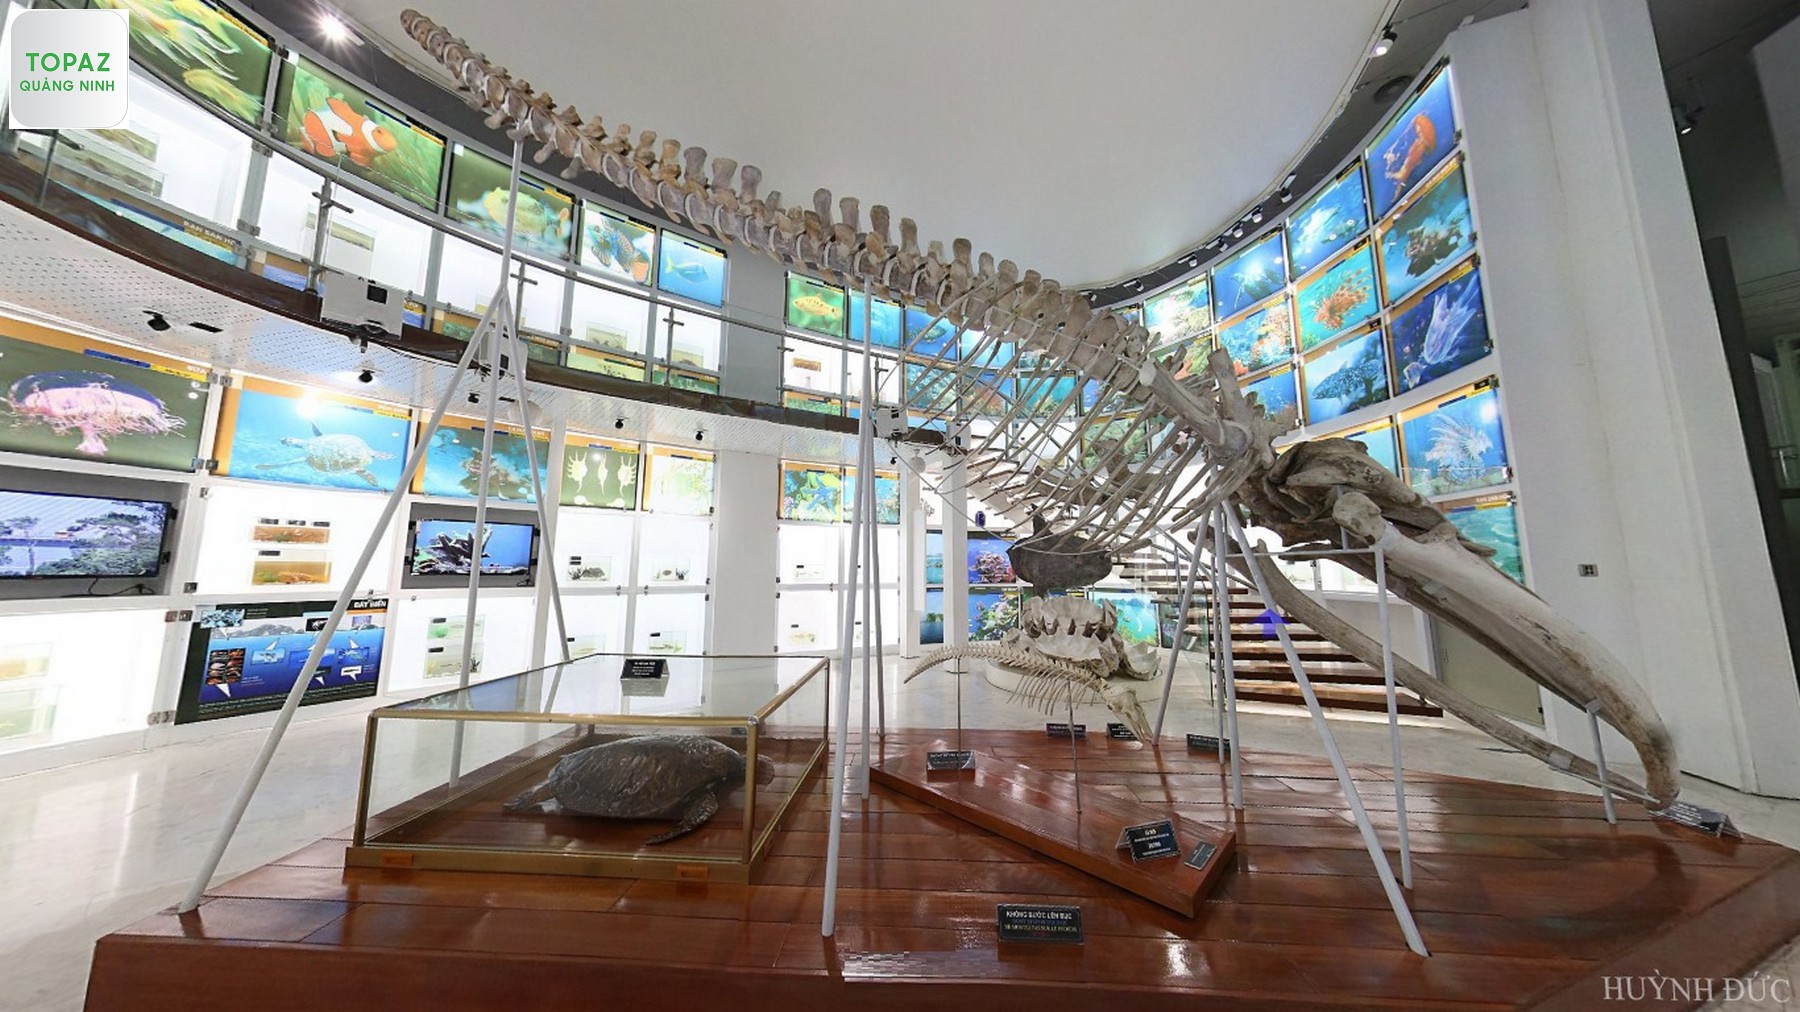 Bộ xương cá voi, cá mập và phía sau là màn hình đèn LED khổng lồ